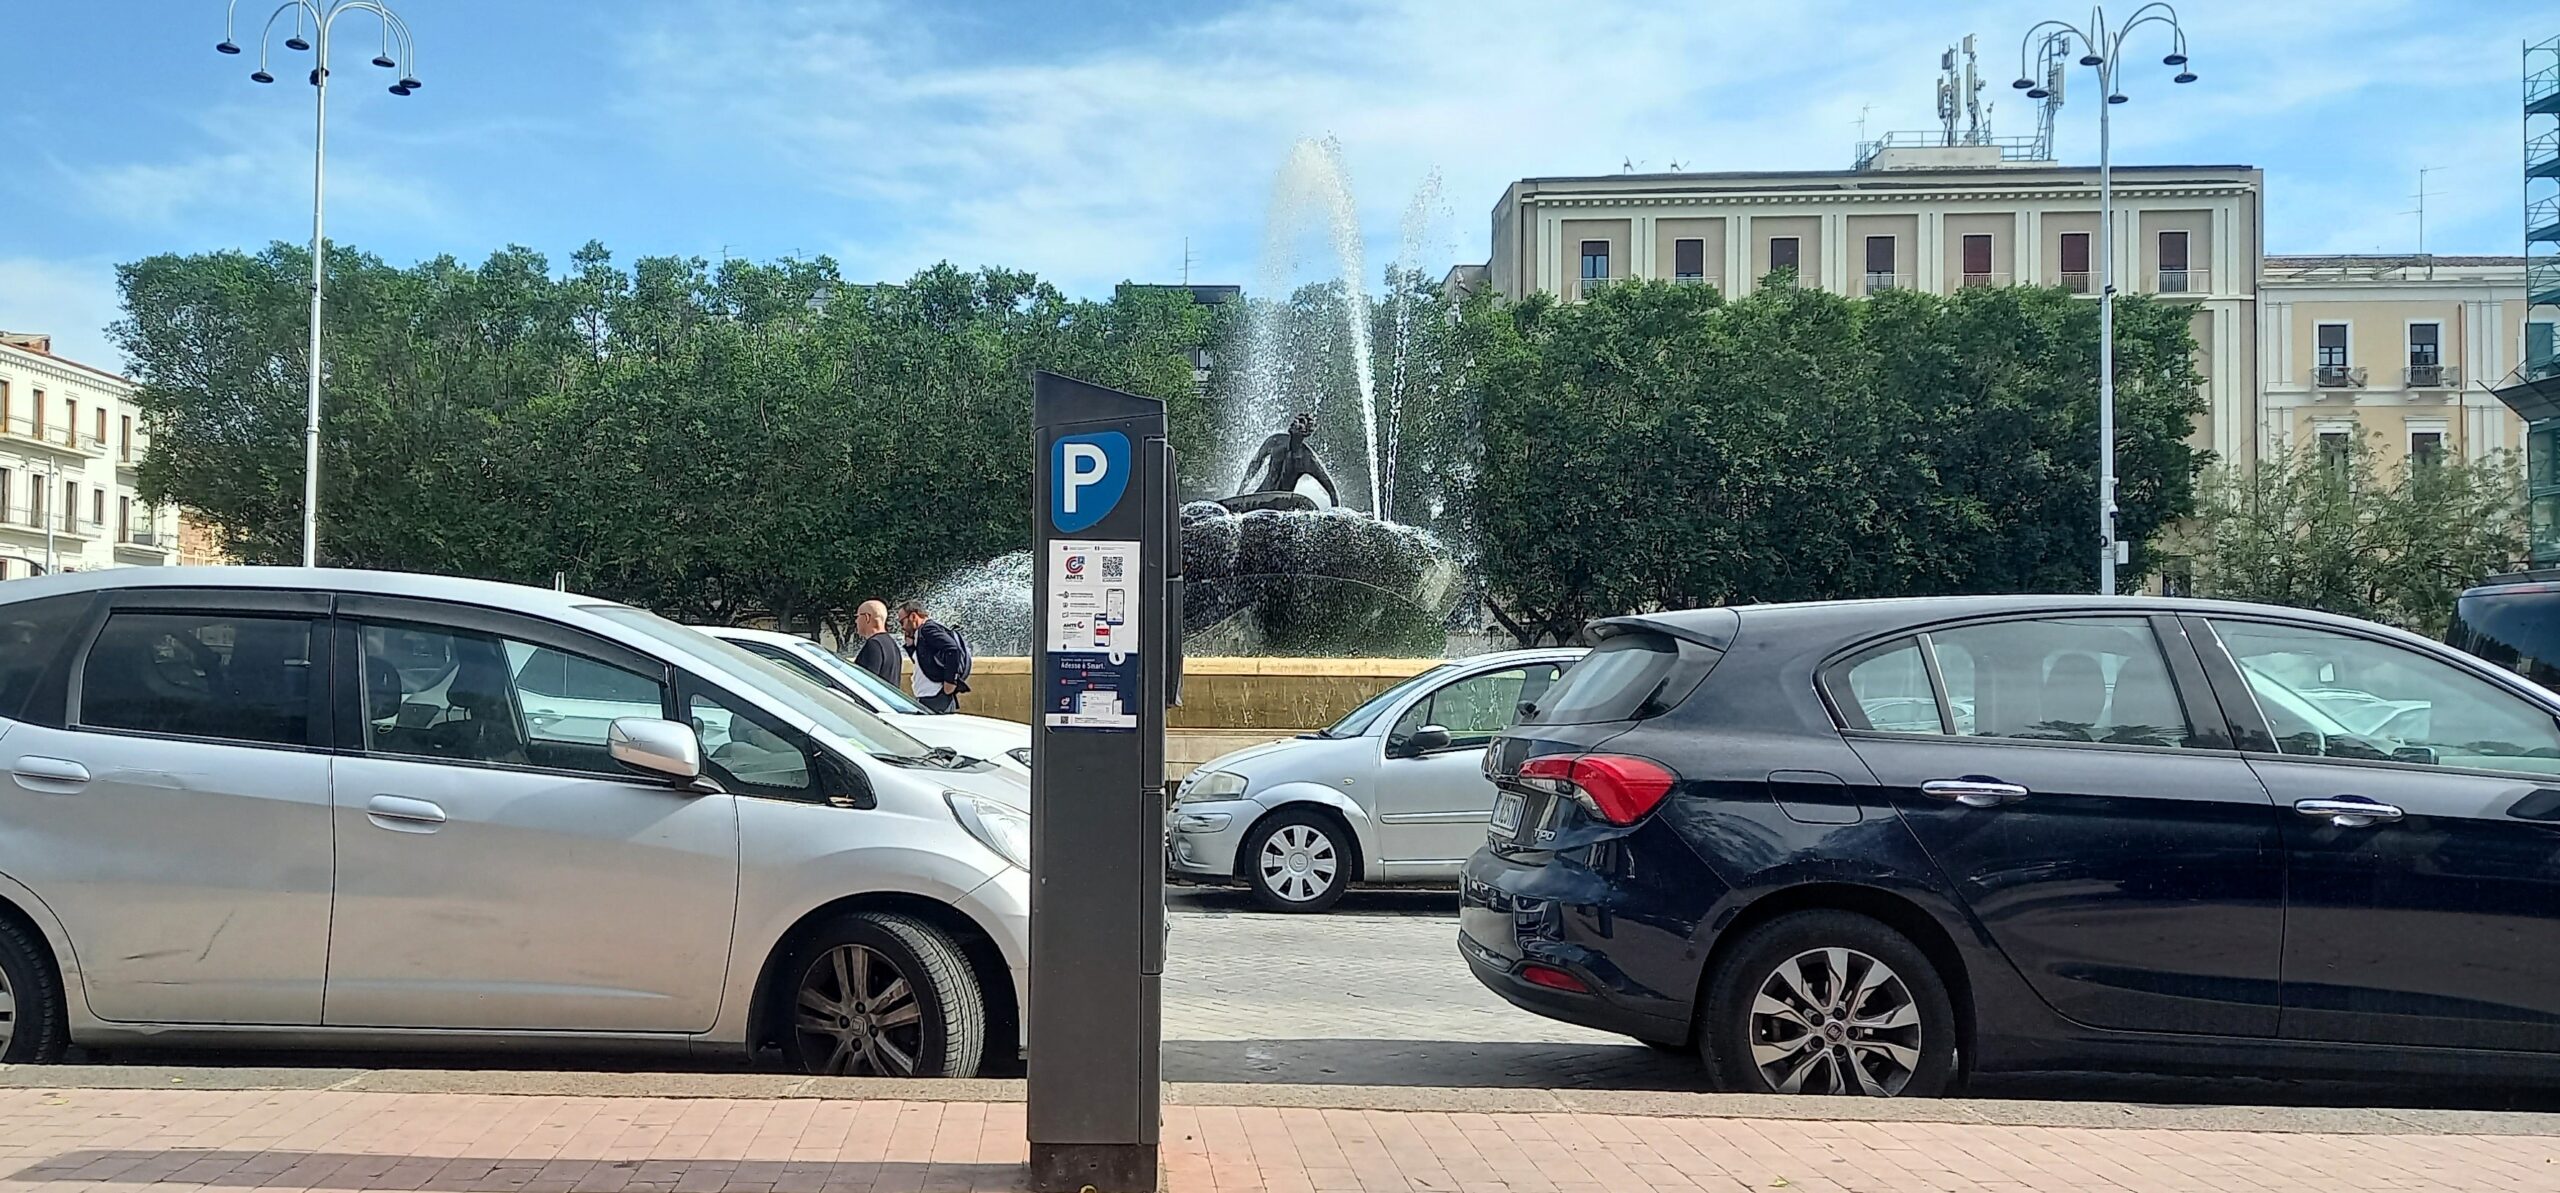 Catania Visionaria Il Parco Ritrovato Piazza Giovanni Verga 1mqdb Verde Urbano Cerchi d'Oro arte involontaria 15